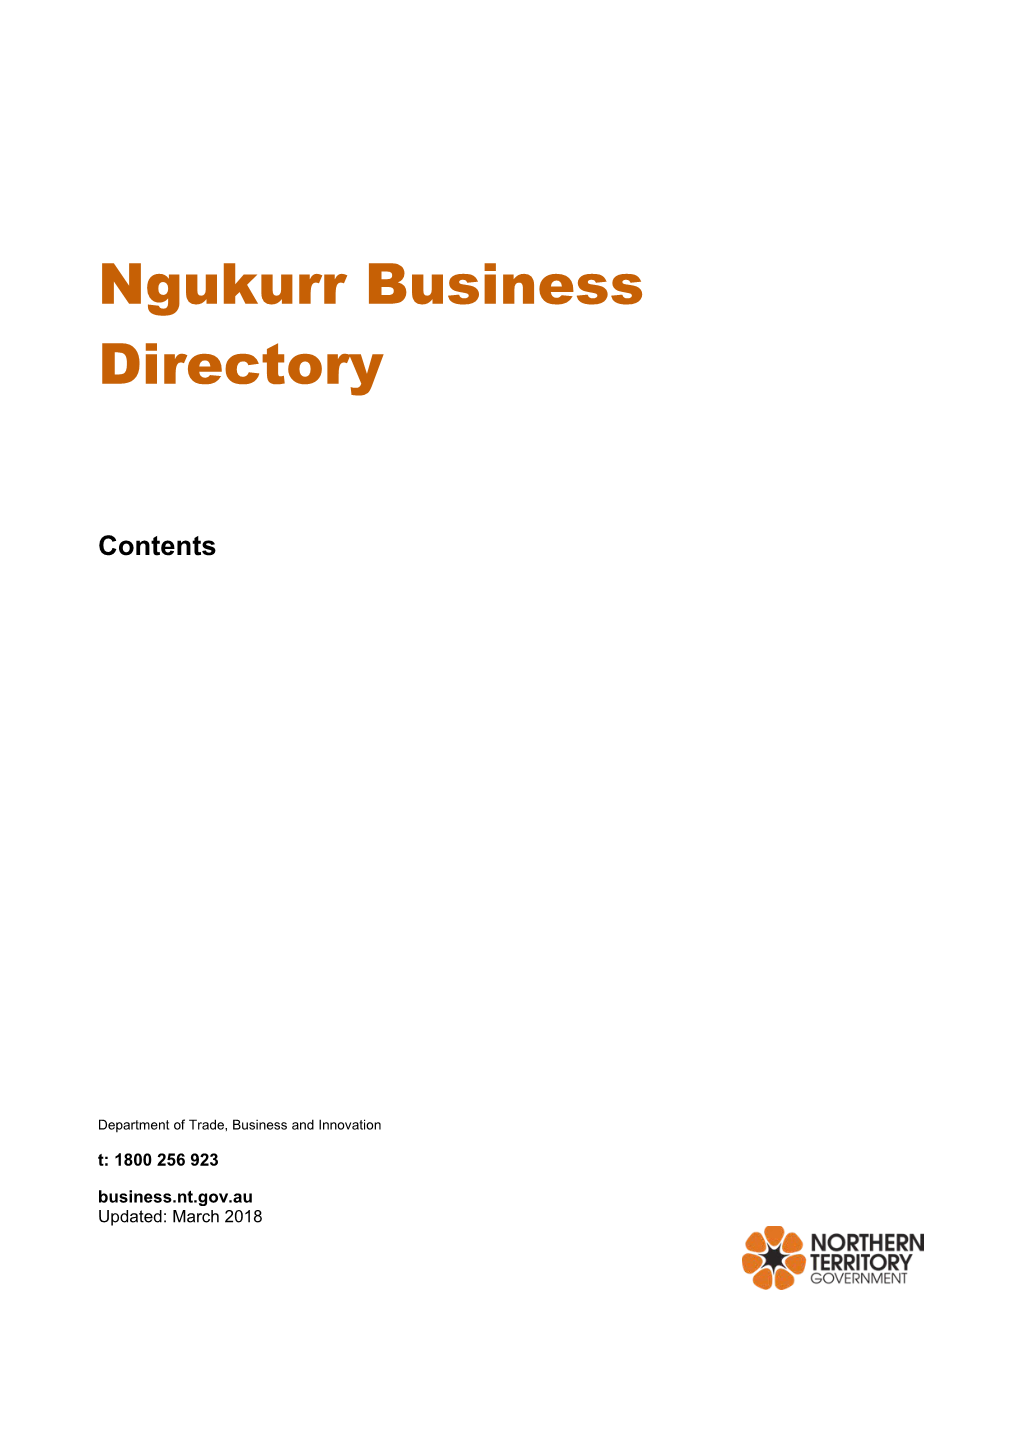 Ngukurr Business Directory